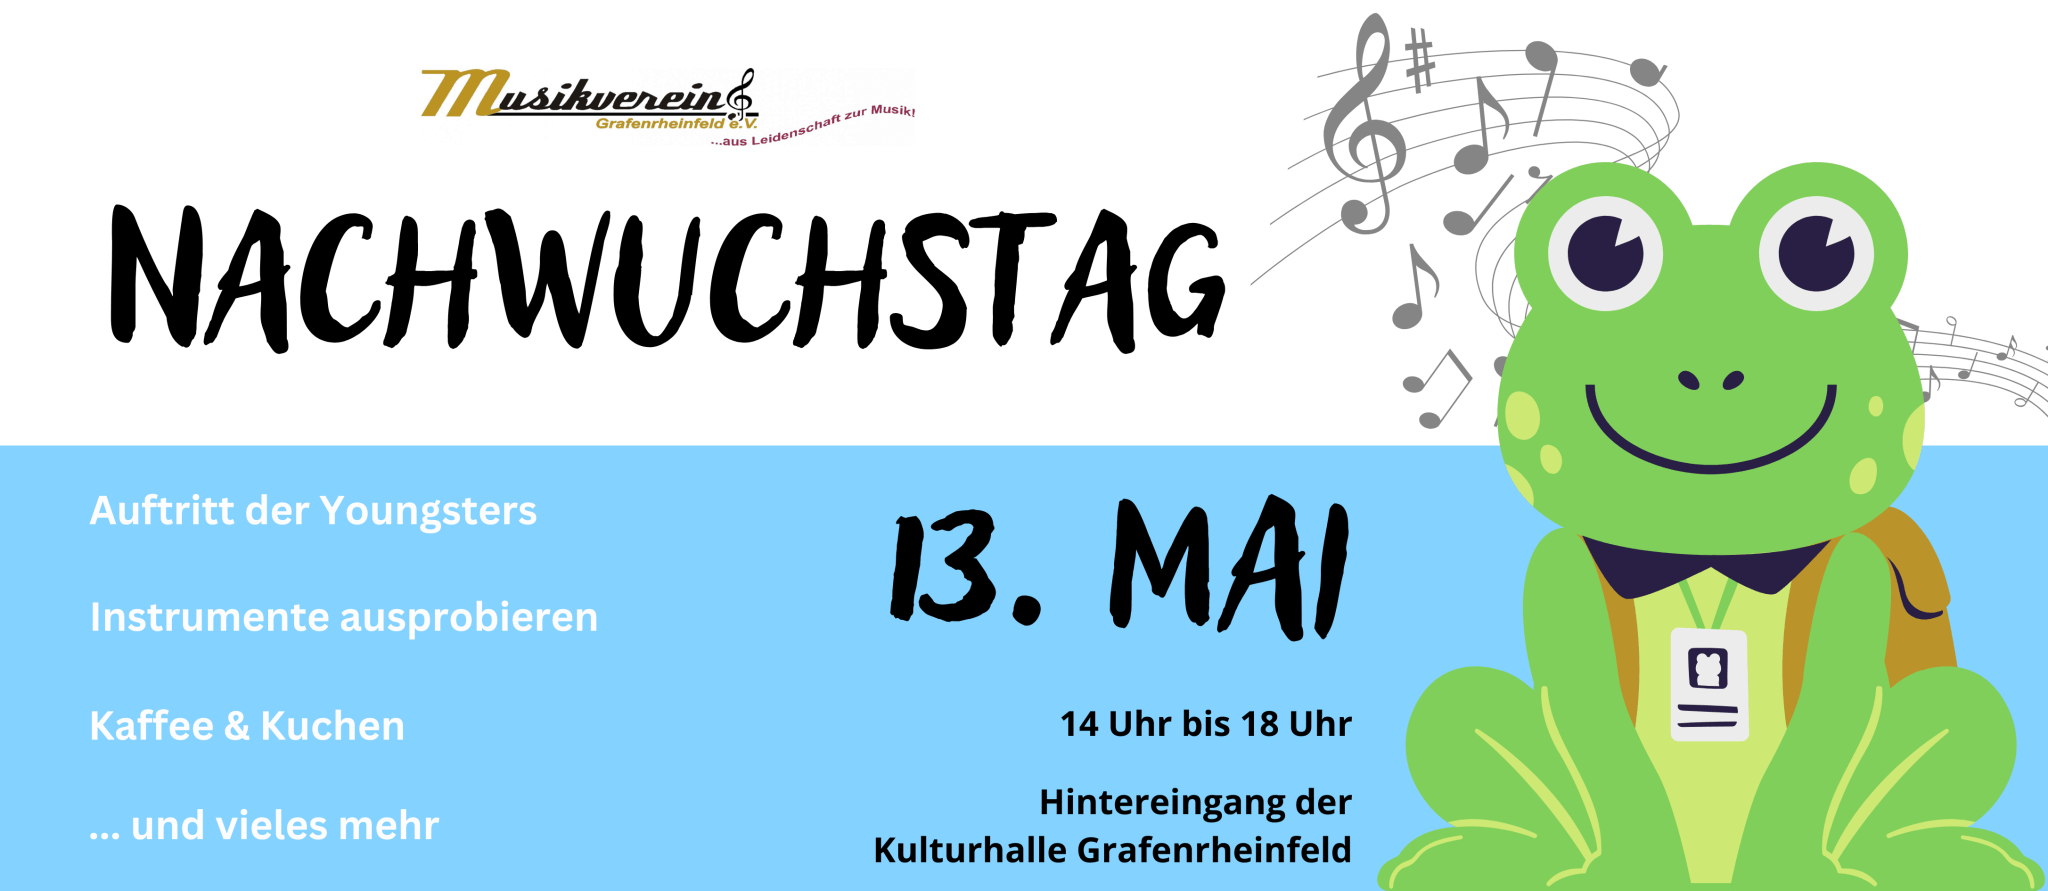 Nachwuchstag Nachwuchs Kinder Grafenrheinfeld Schweinfurt Basteln Instrumente Youngsters Orchester sbo